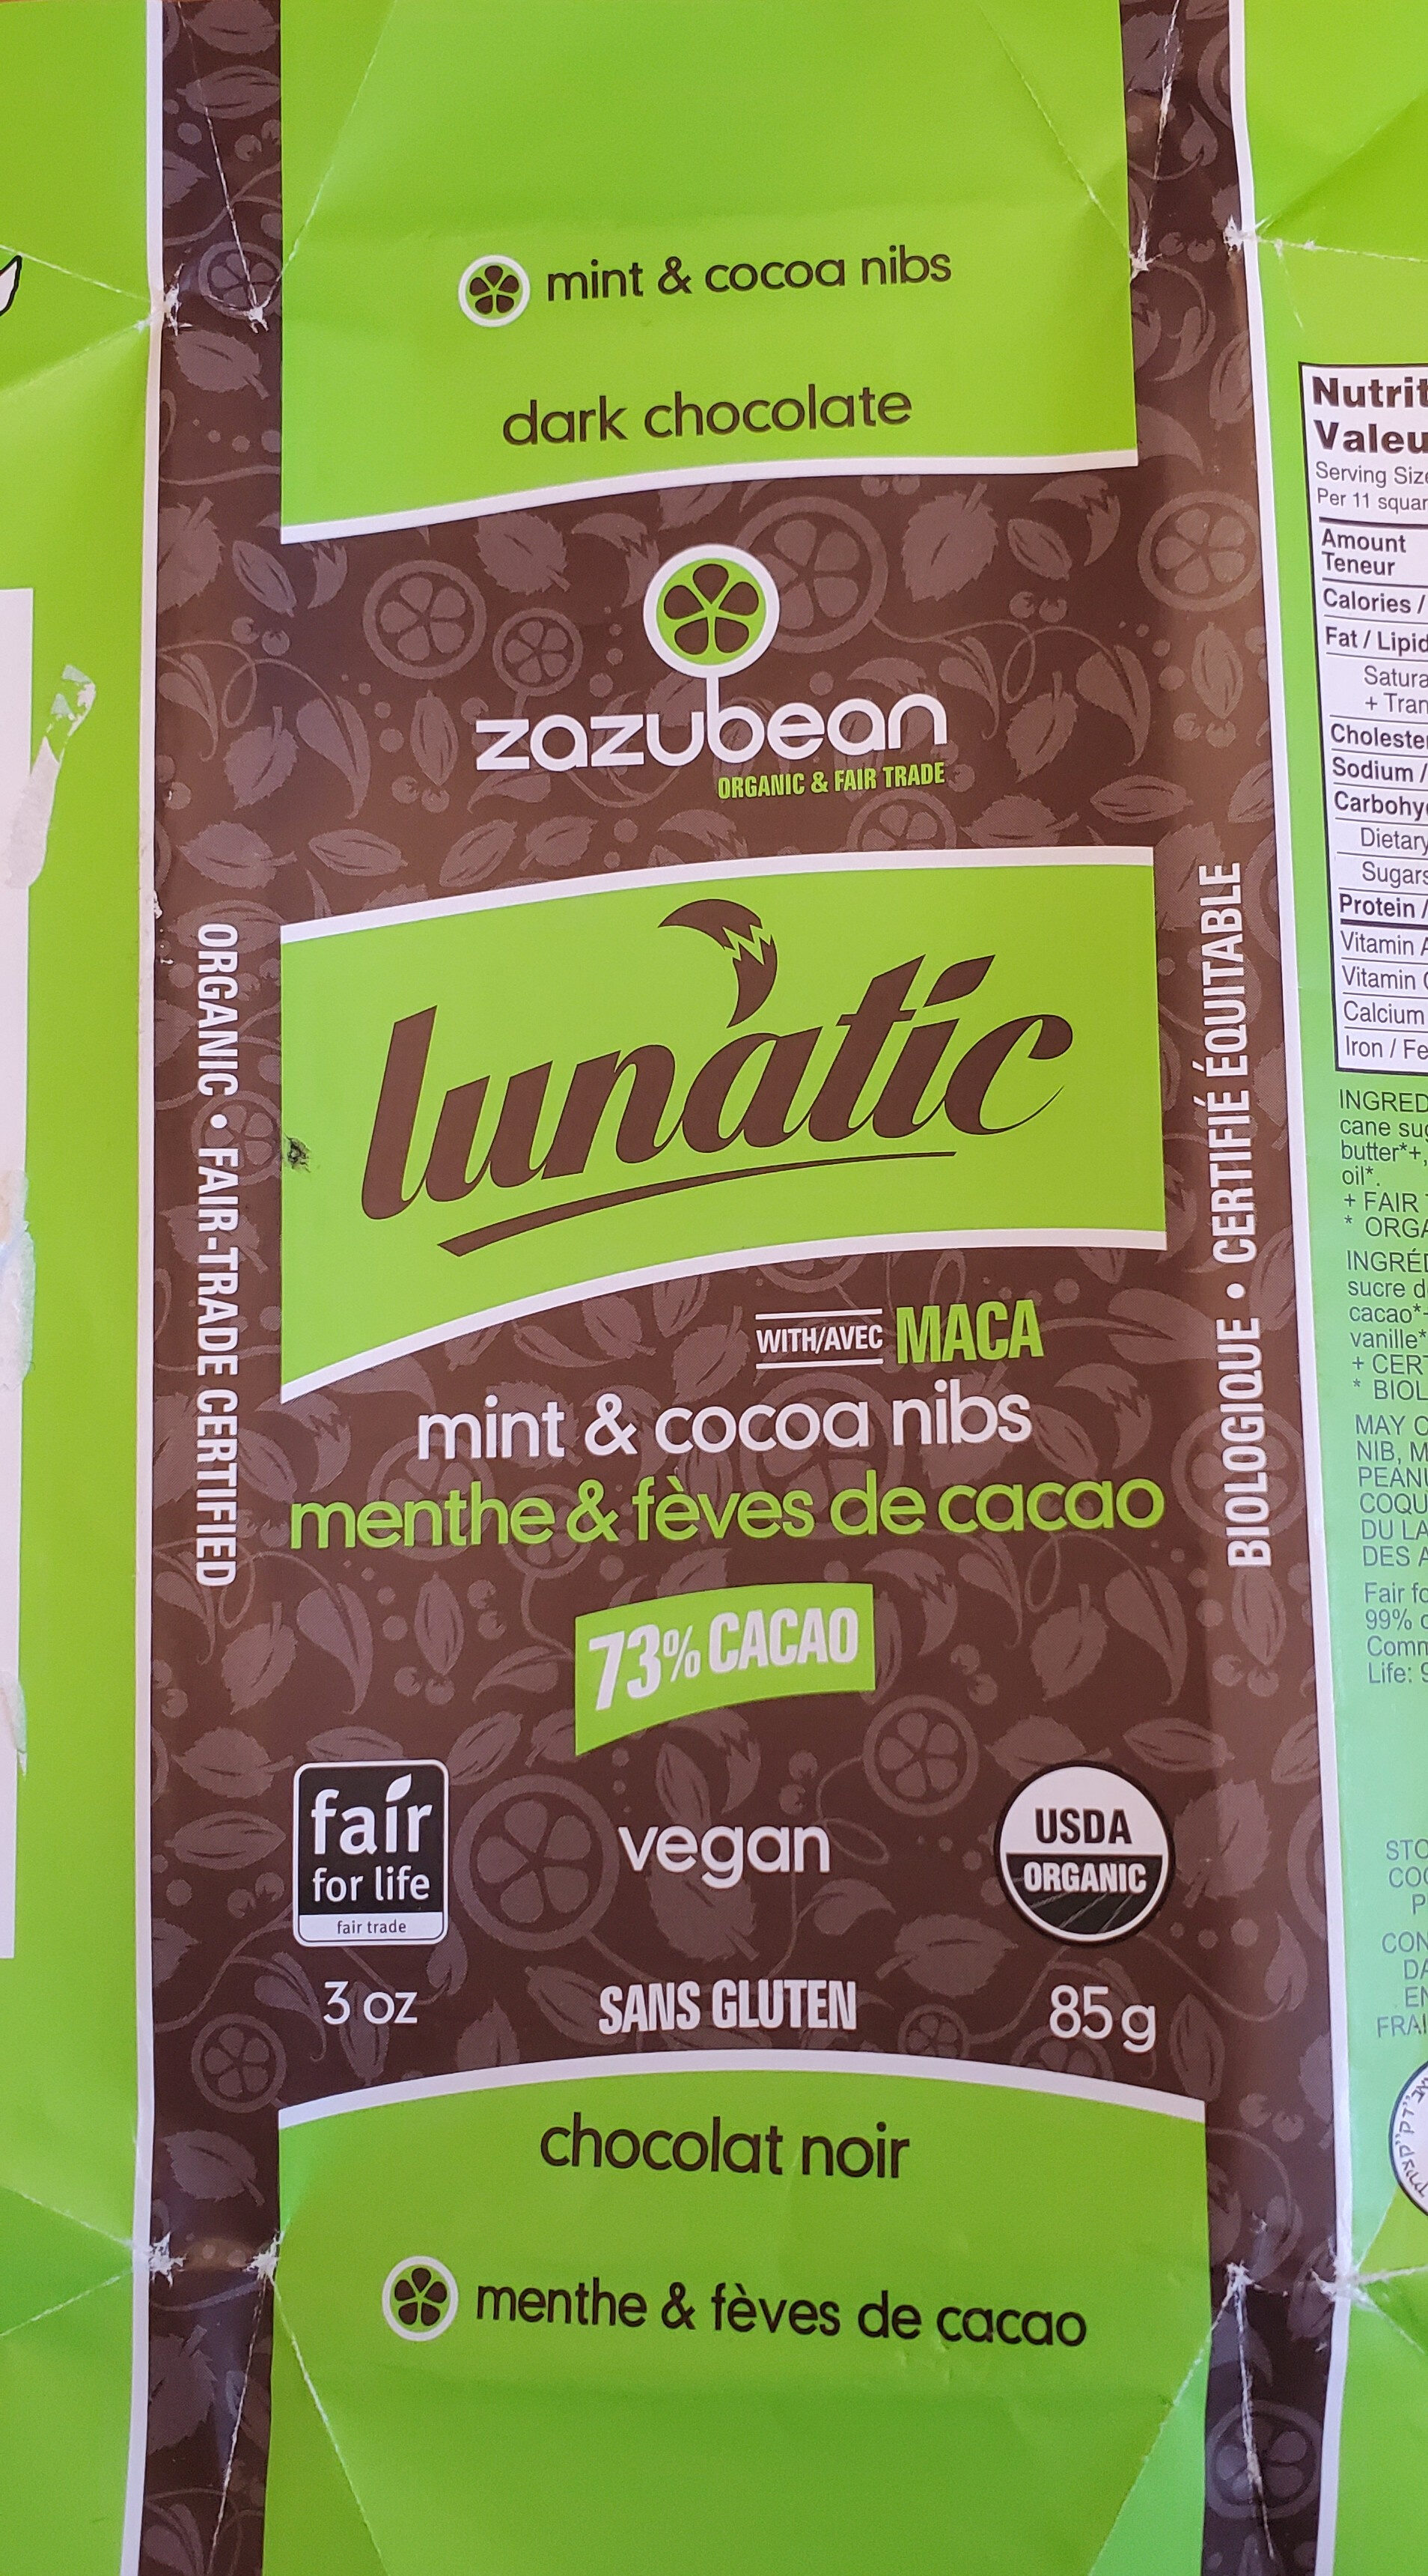 Lunatic mint & cocoa nibs - Product - en